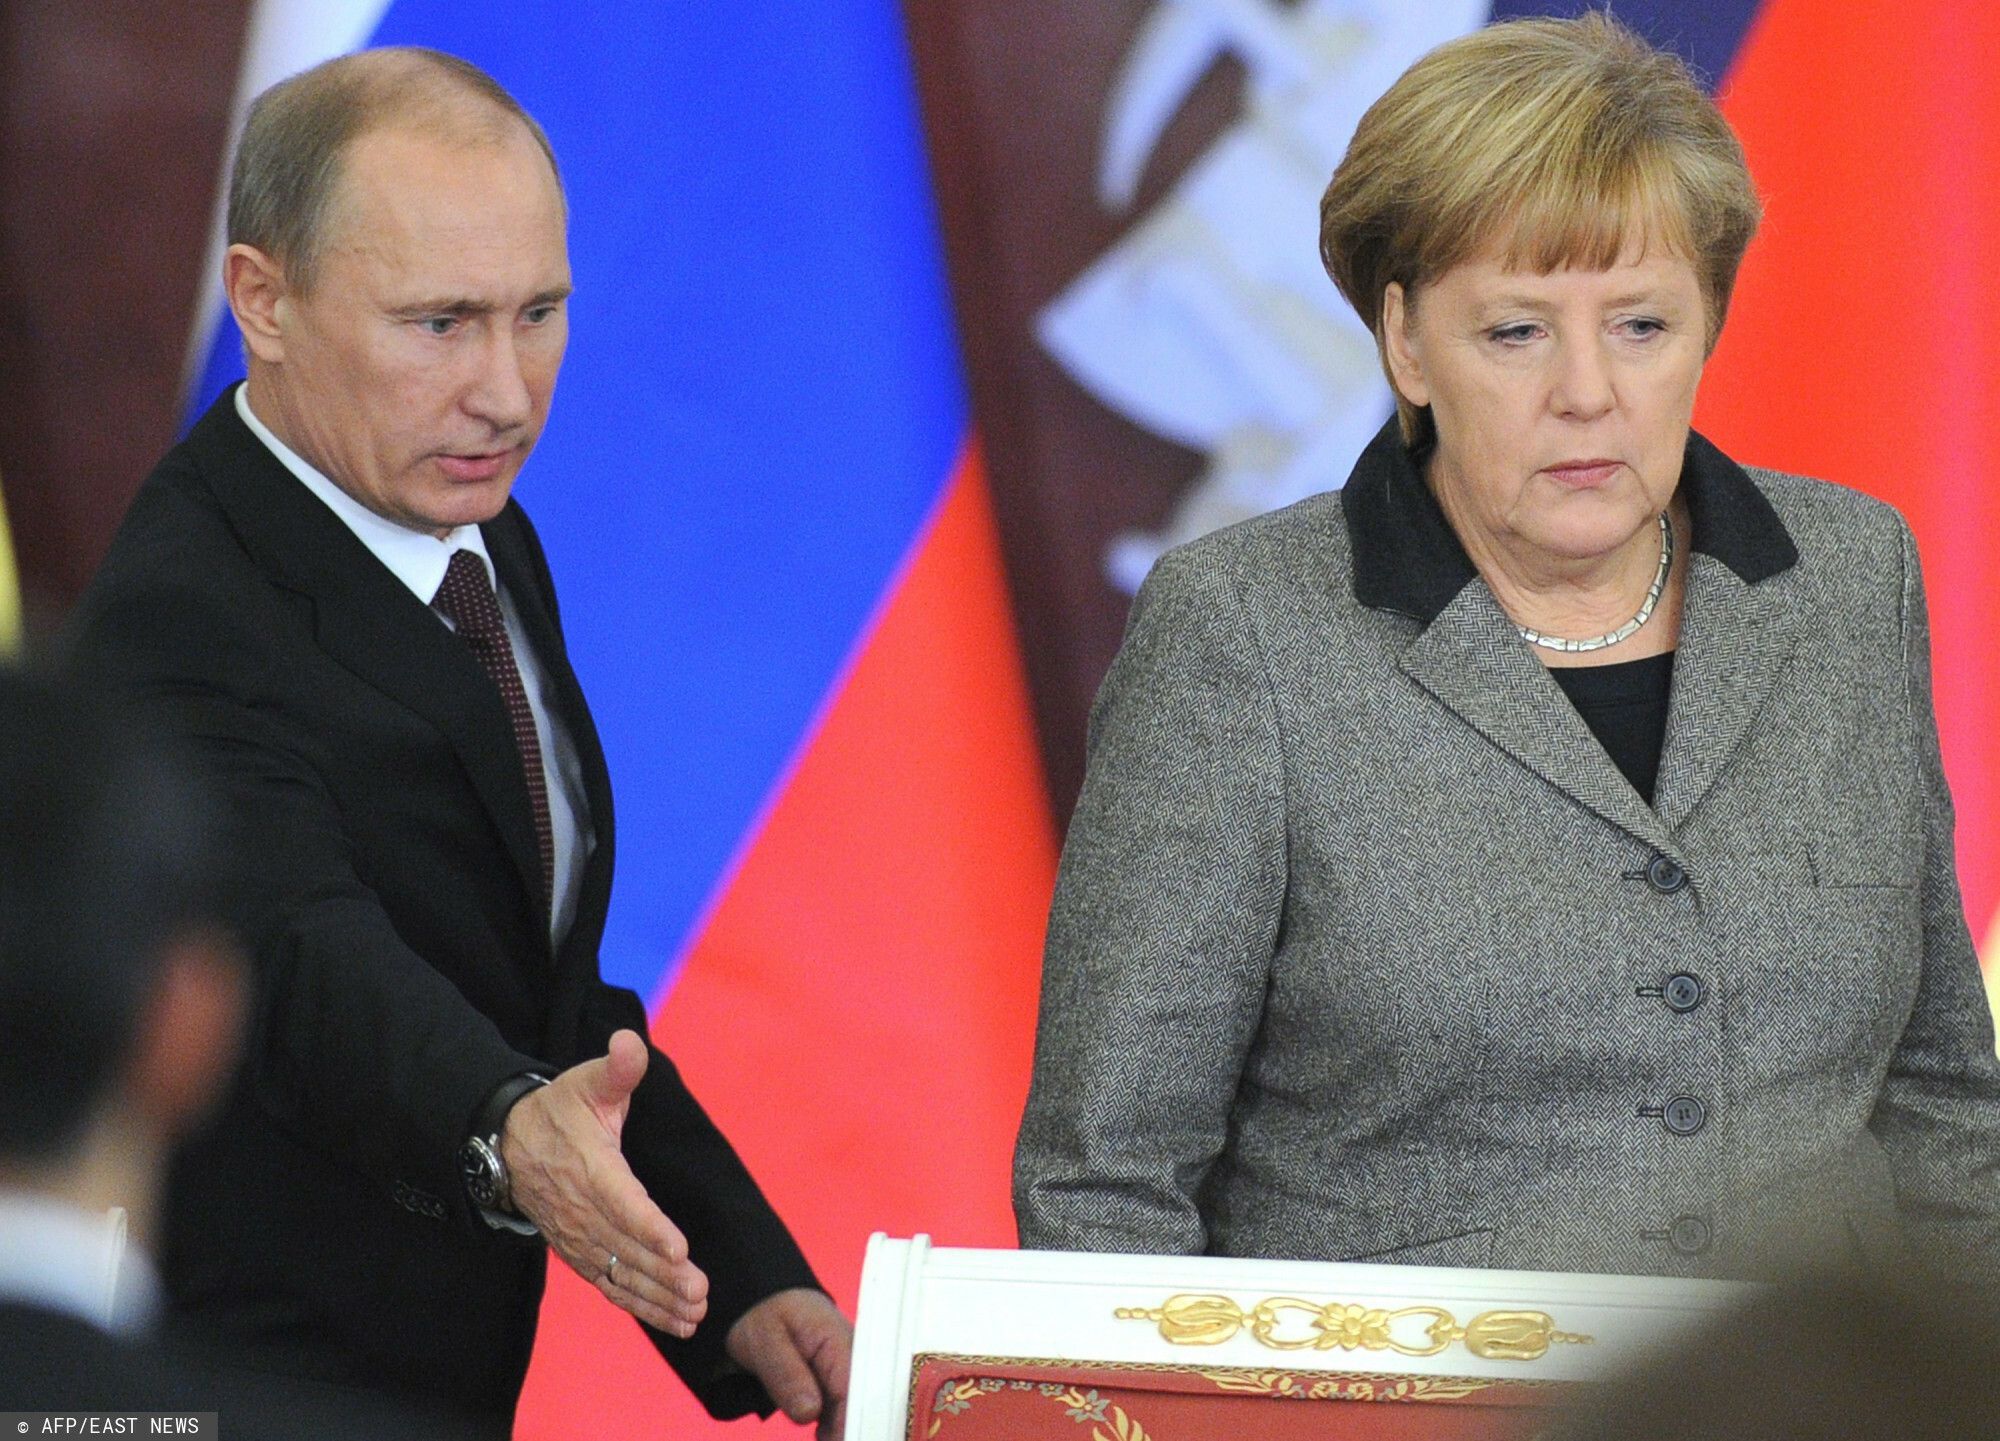 Angela Merkel skomentowała rzekomą próbę zastraszenia psem przez Władimira Putina